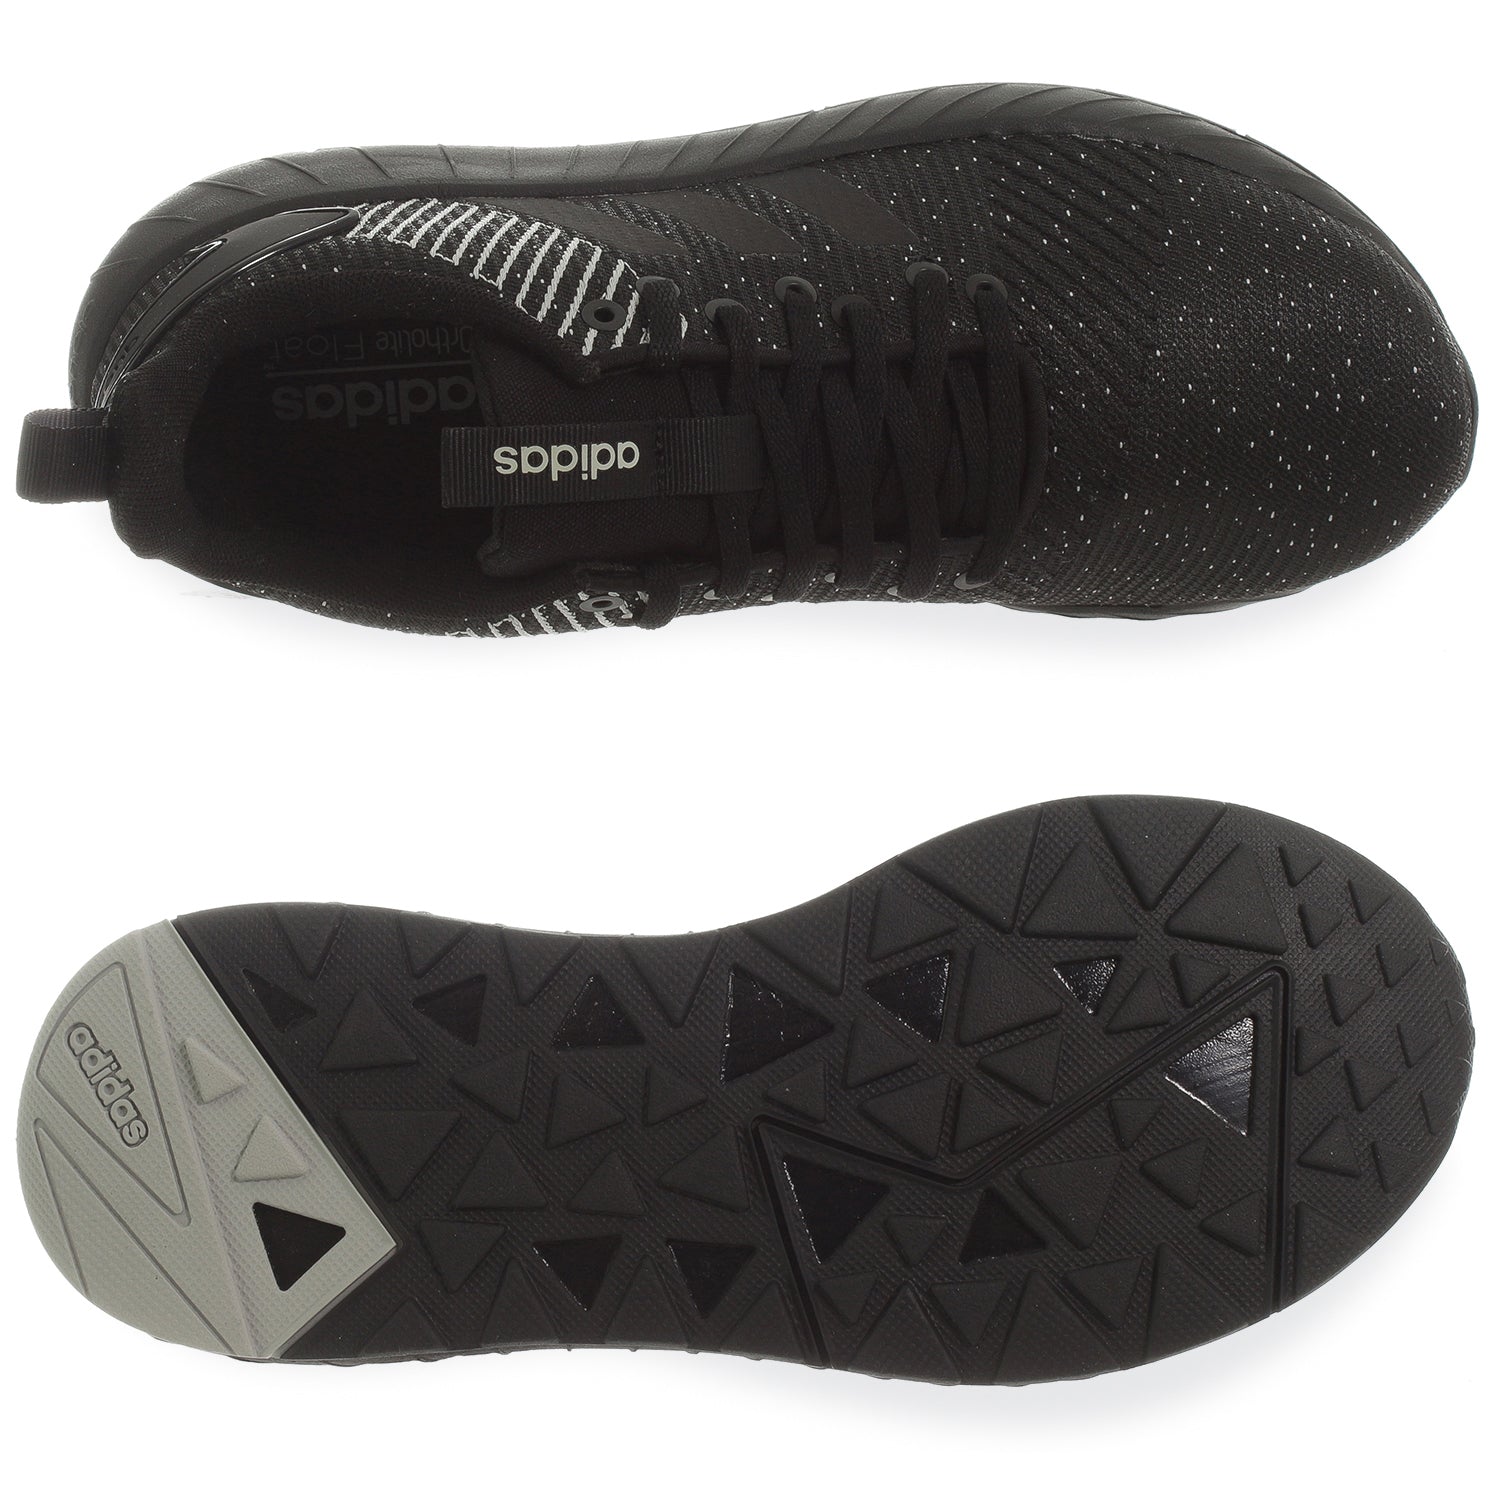 Questar BYD - B44814 - Negro - Hombre | Shoelander.com - Footwear